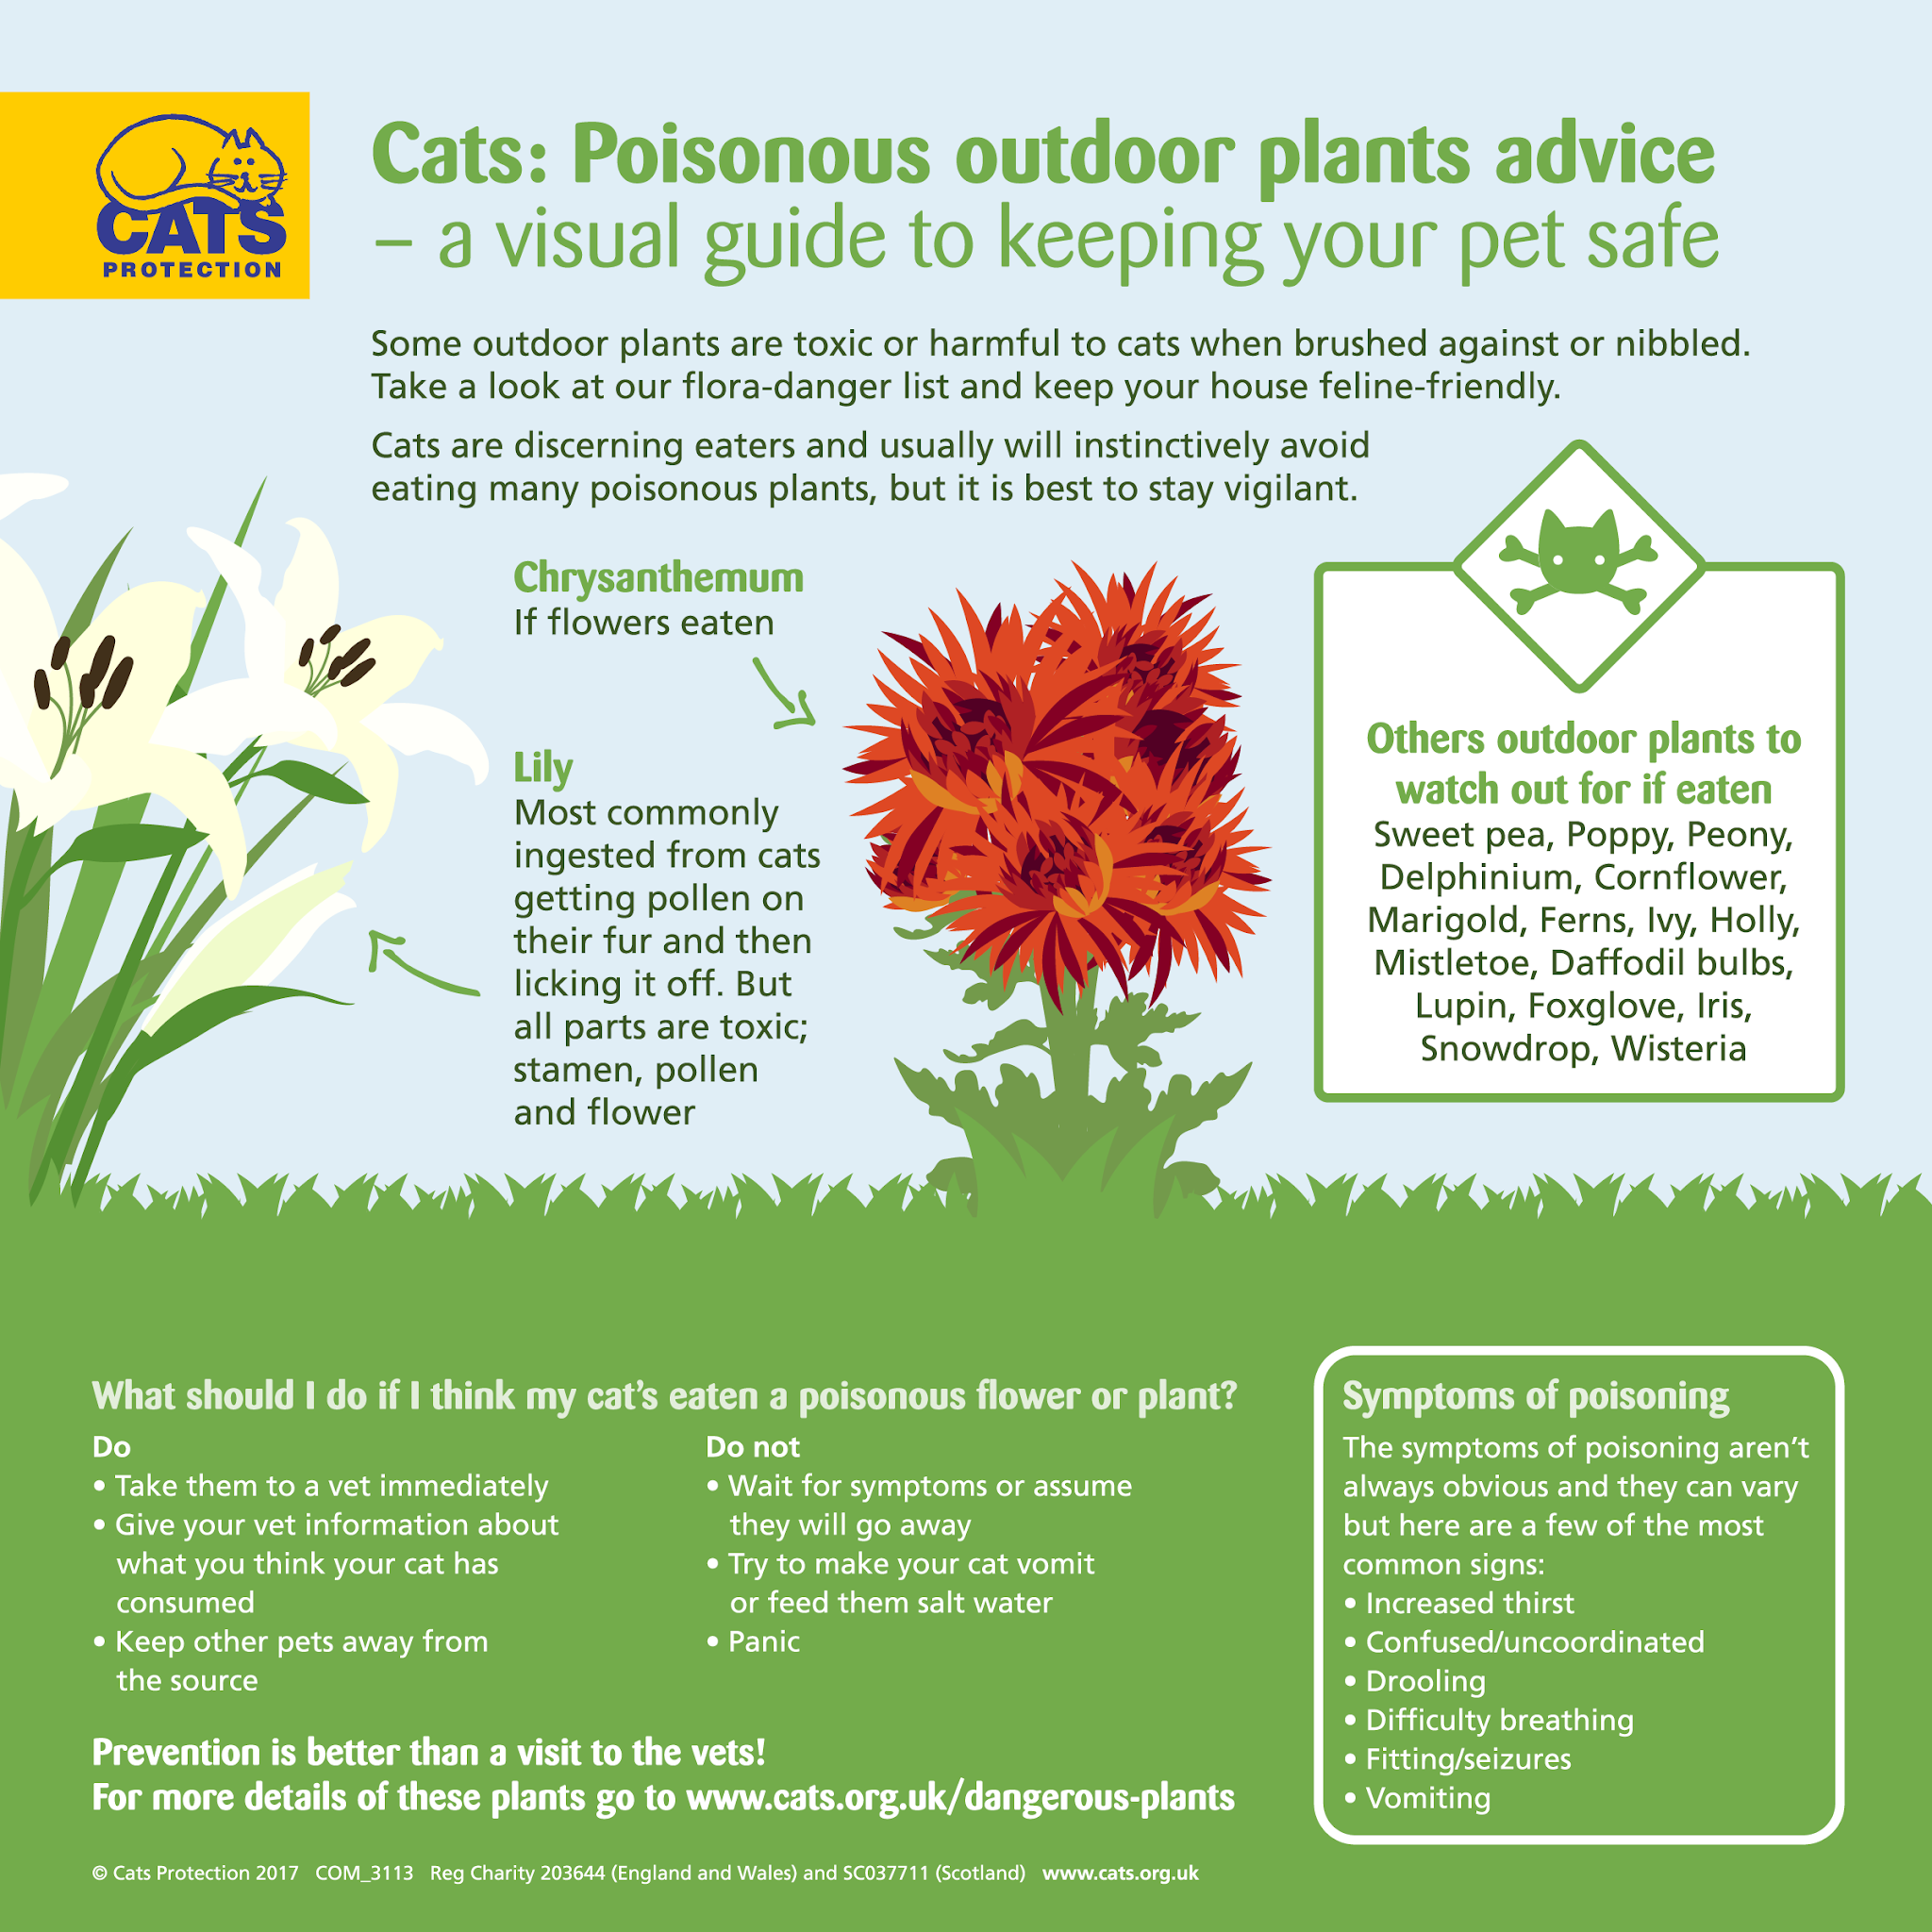 Evitare le piante da giardino tossiche e mantenere il tuo gatto al sicuro.